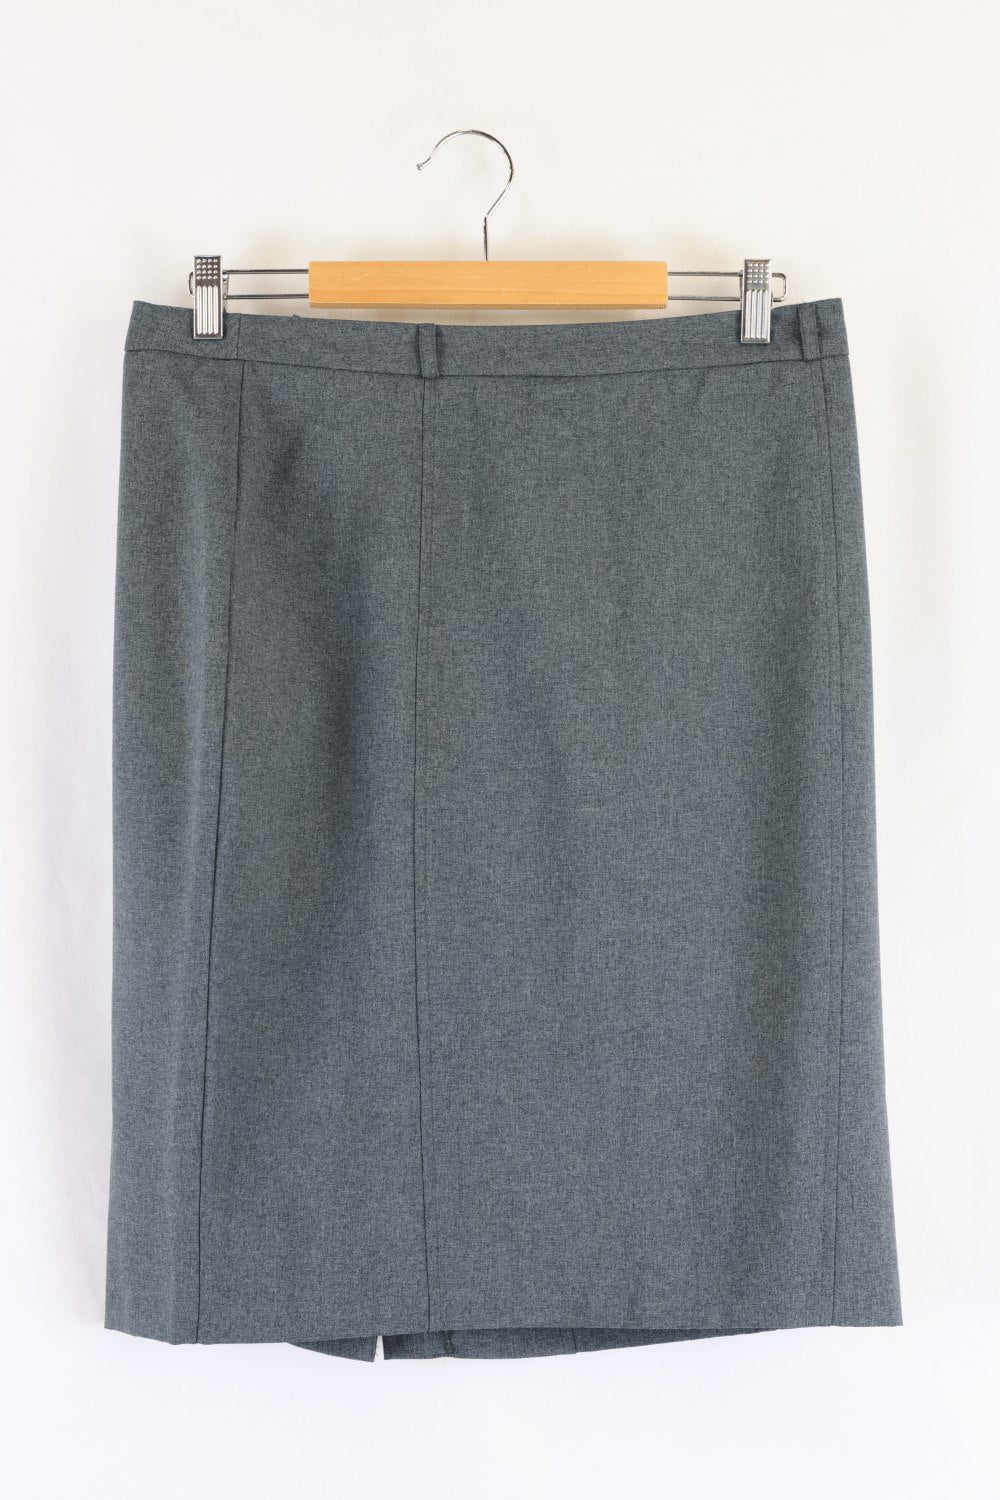 Asos Grey Skirt 14